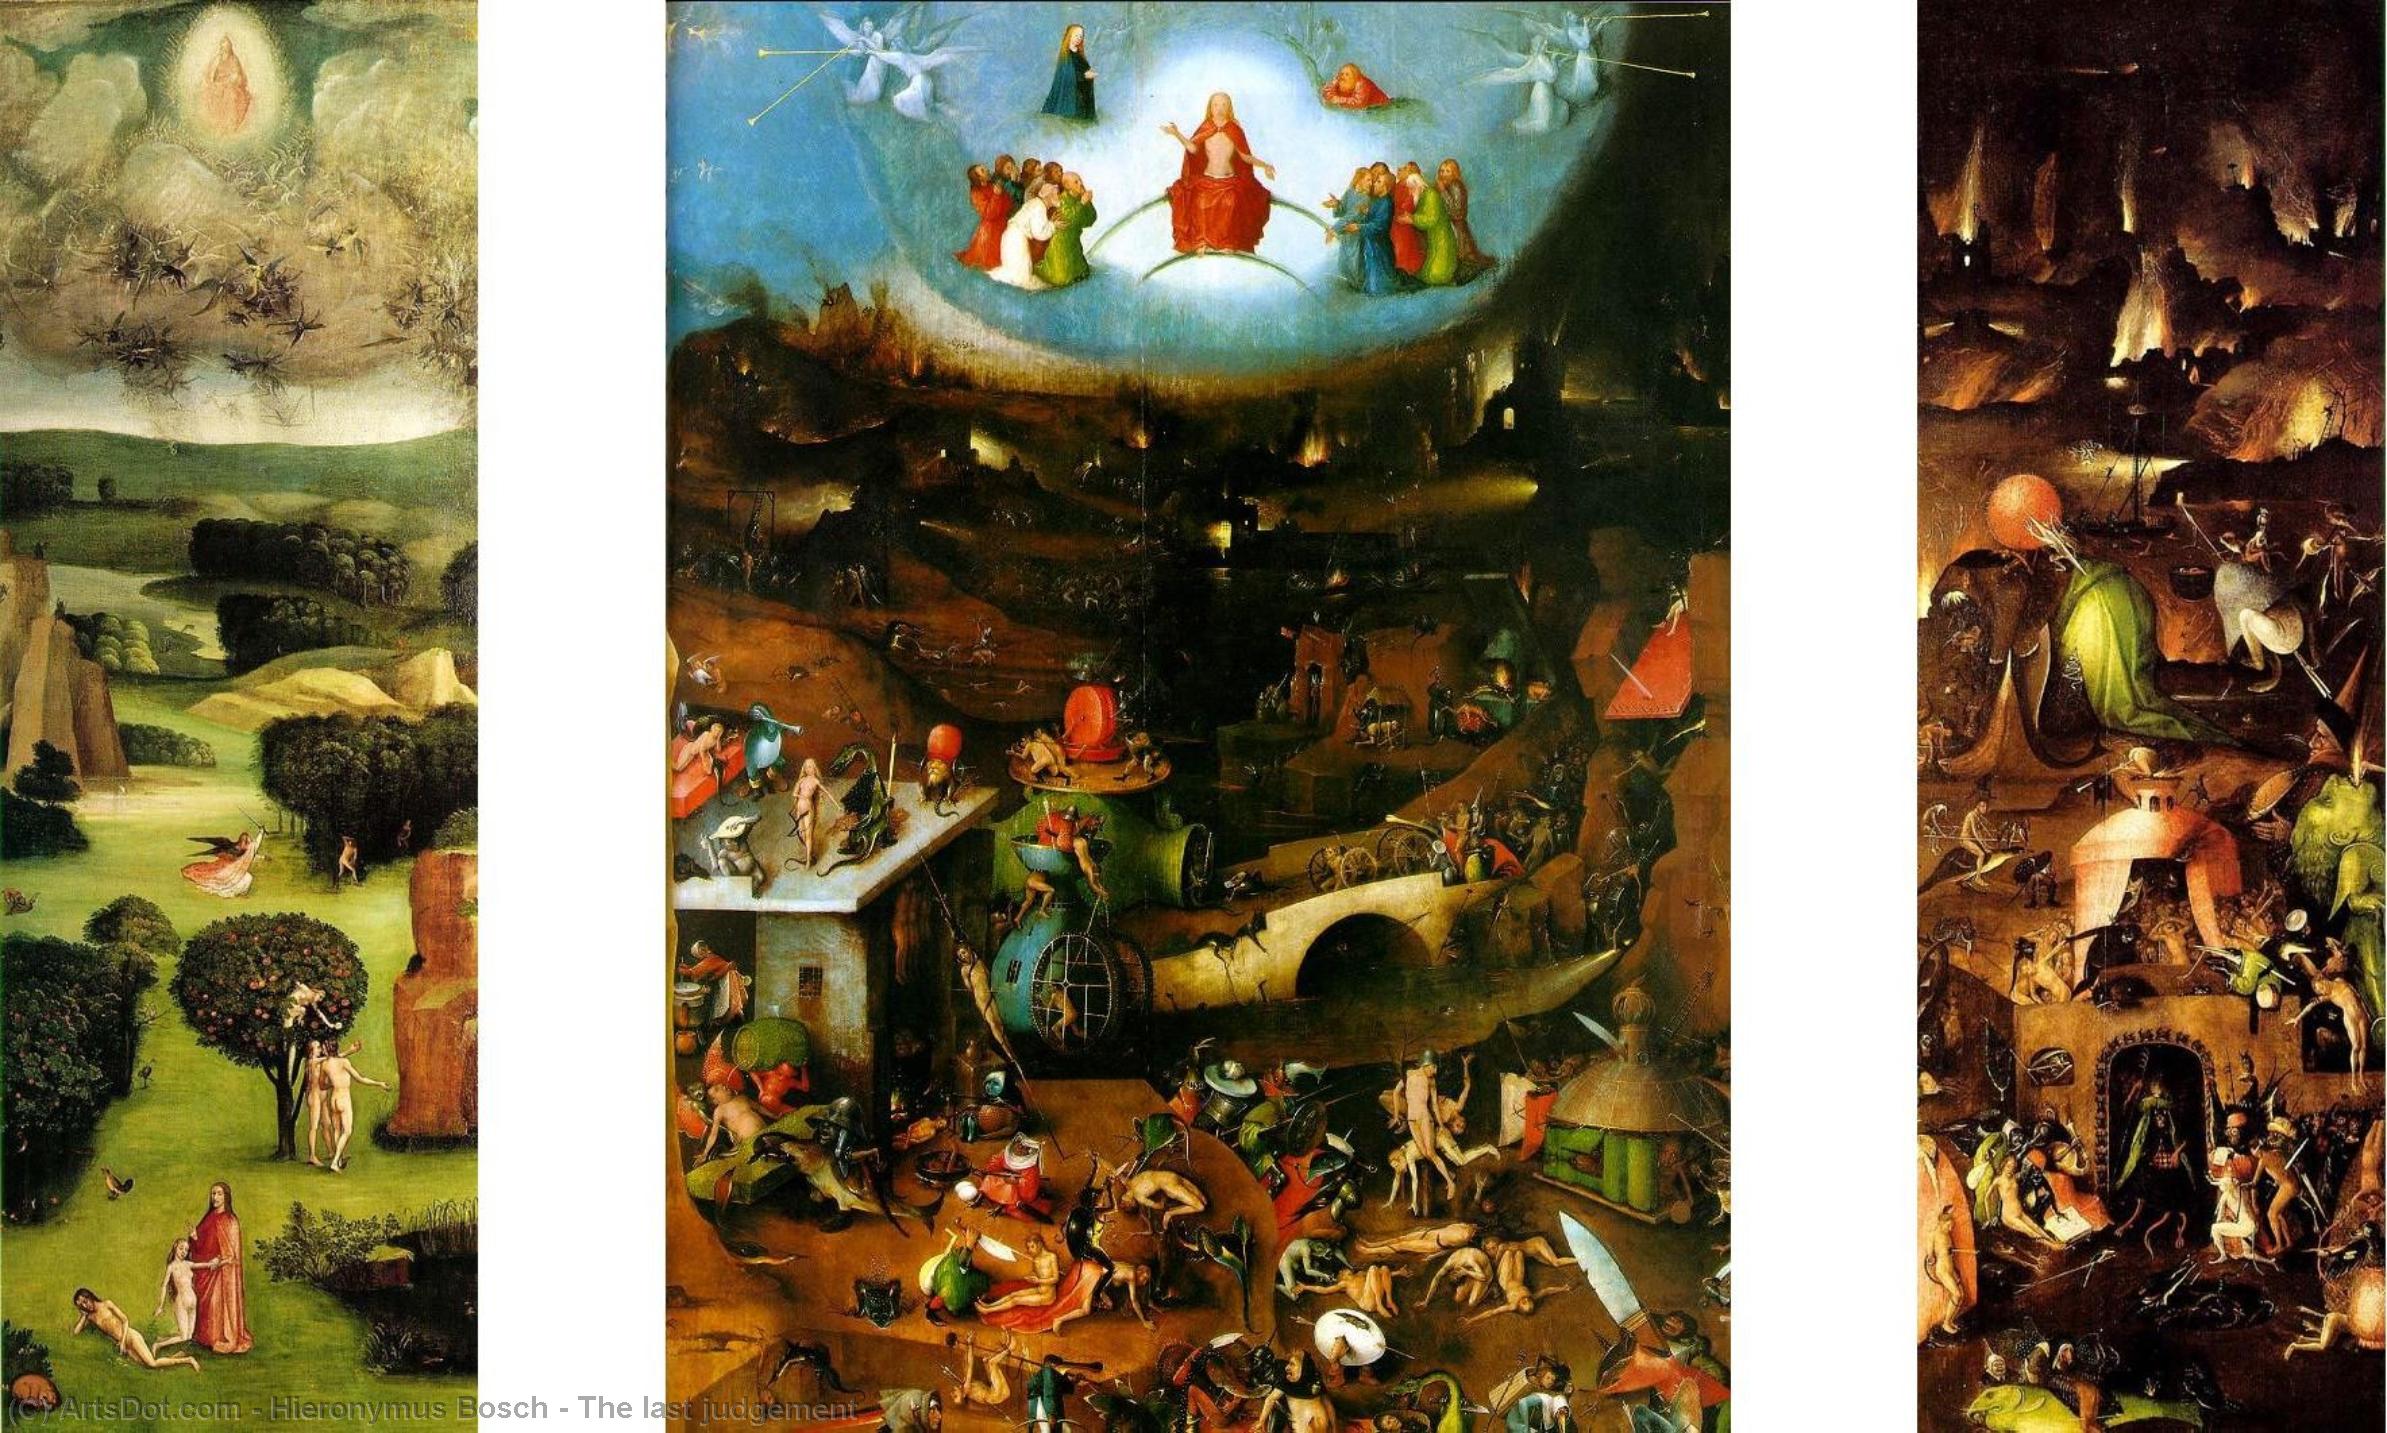 WikiOO.org - Enciclopédia das Belas Artes - Pintura, Arte por Hieronymus Bosch - The last judgement